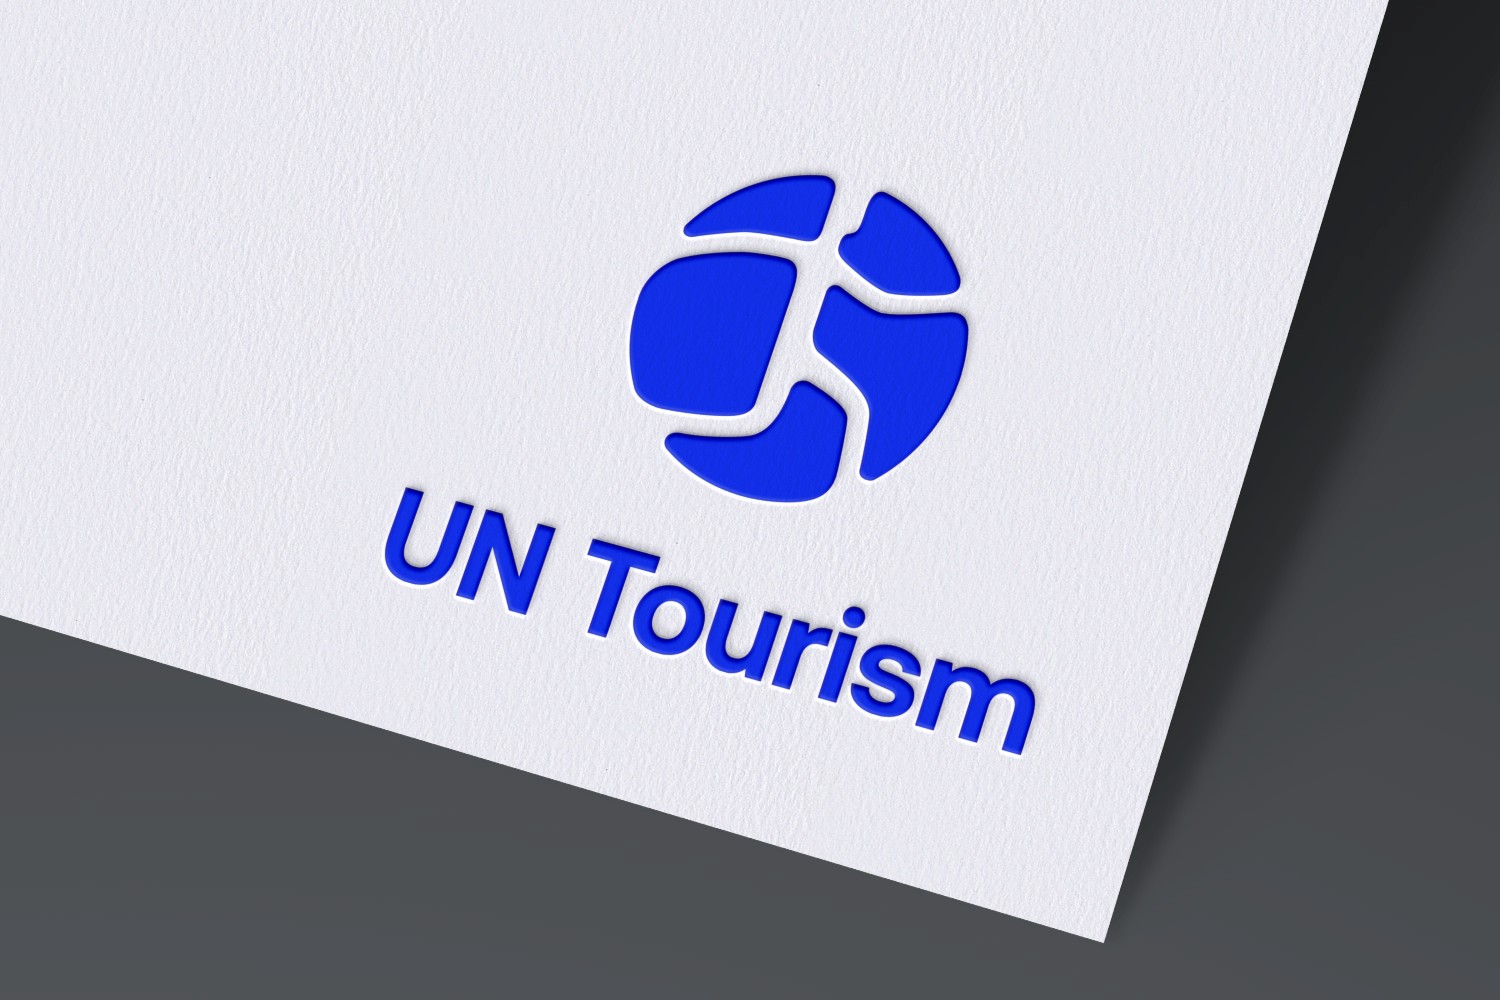 UN Tourism